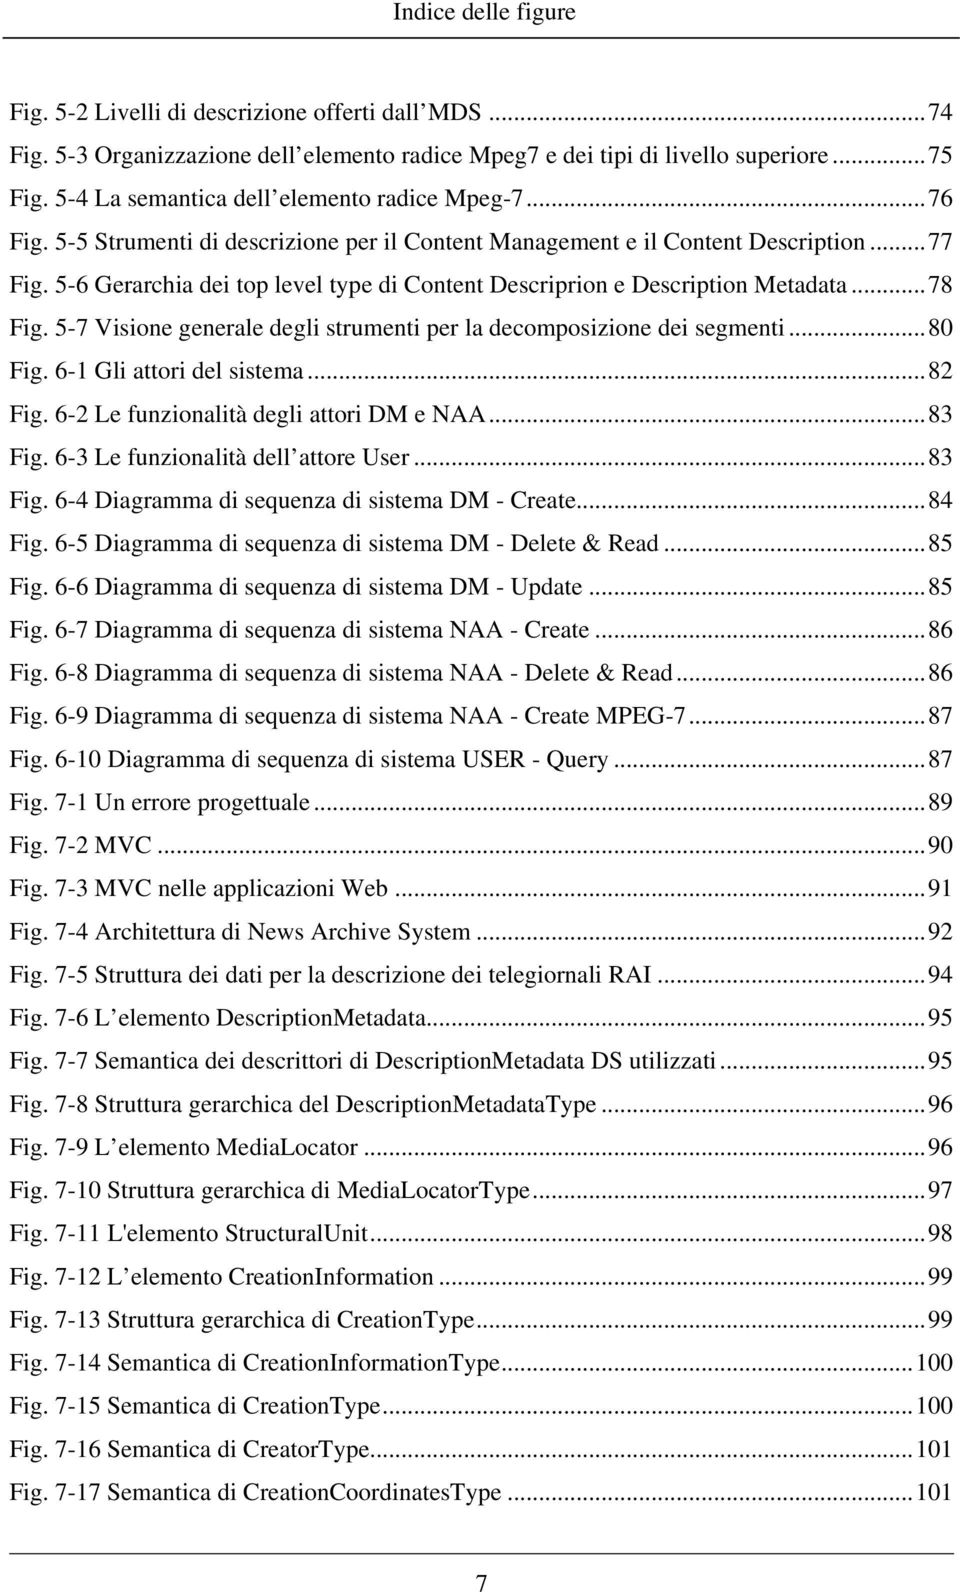 5-6 Gerarchia dei top level type di Content Descriprion e Description Metadata...78 Fig. 5-7 Visione generale degli strumenti per la decomposizione dei segmenti...80 Fig. 6-1 Gli attori del sistema.